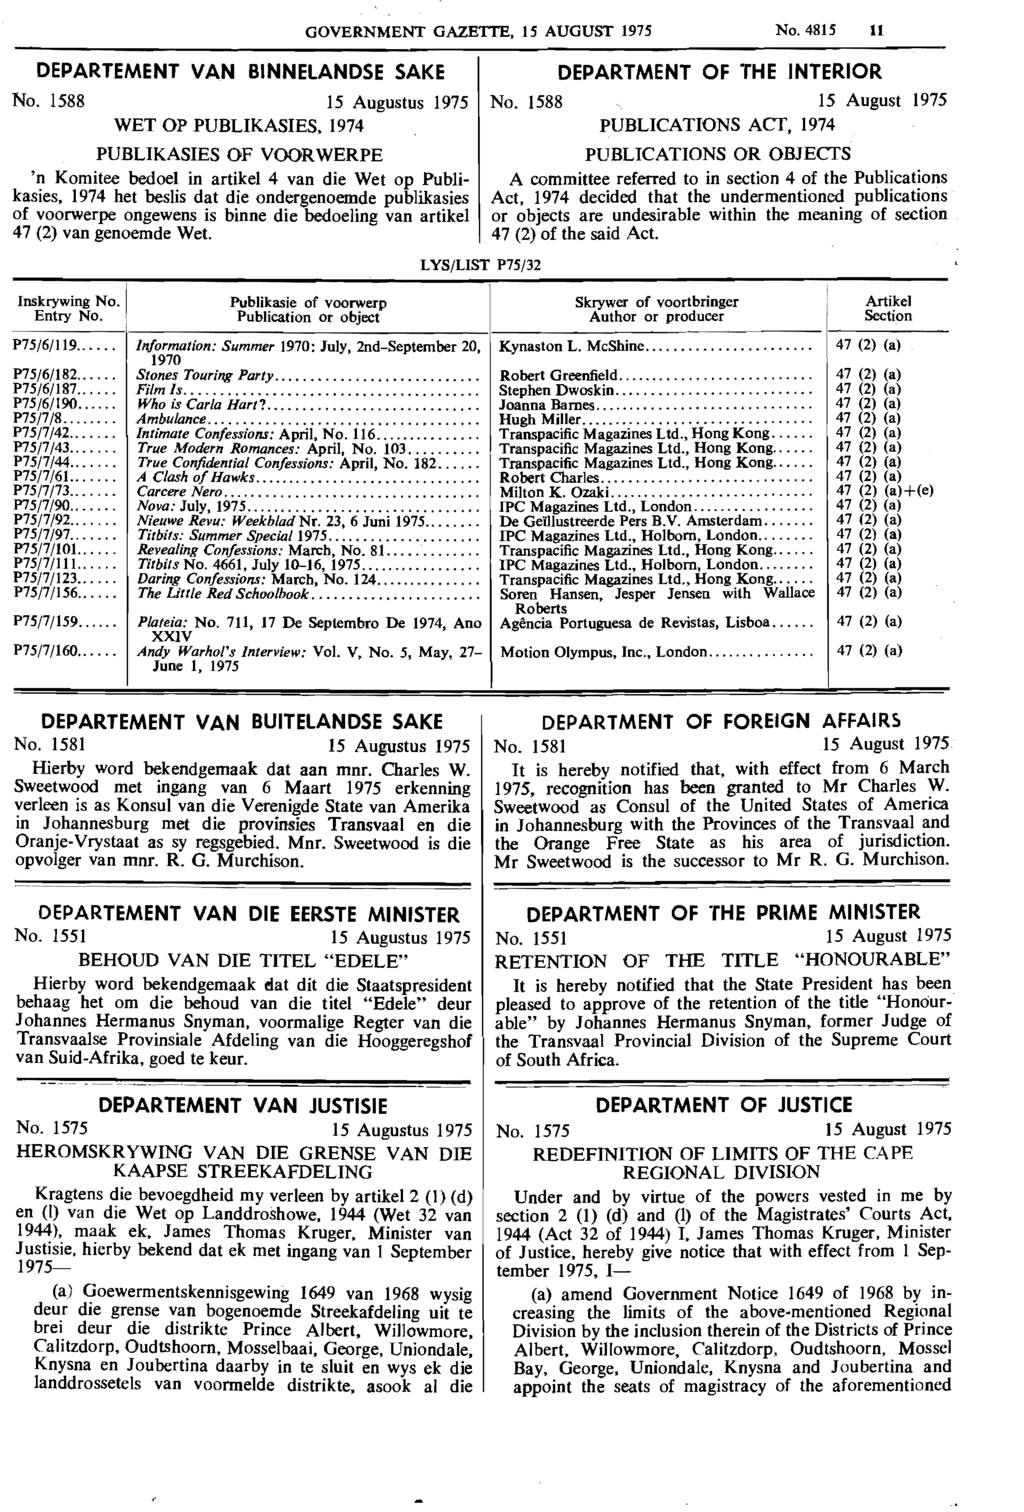 DEPARTEMENT VAN BINNELANDSE SAKE No. 1588 15 Augustus 1975 WET OP PUBLIKASIES.